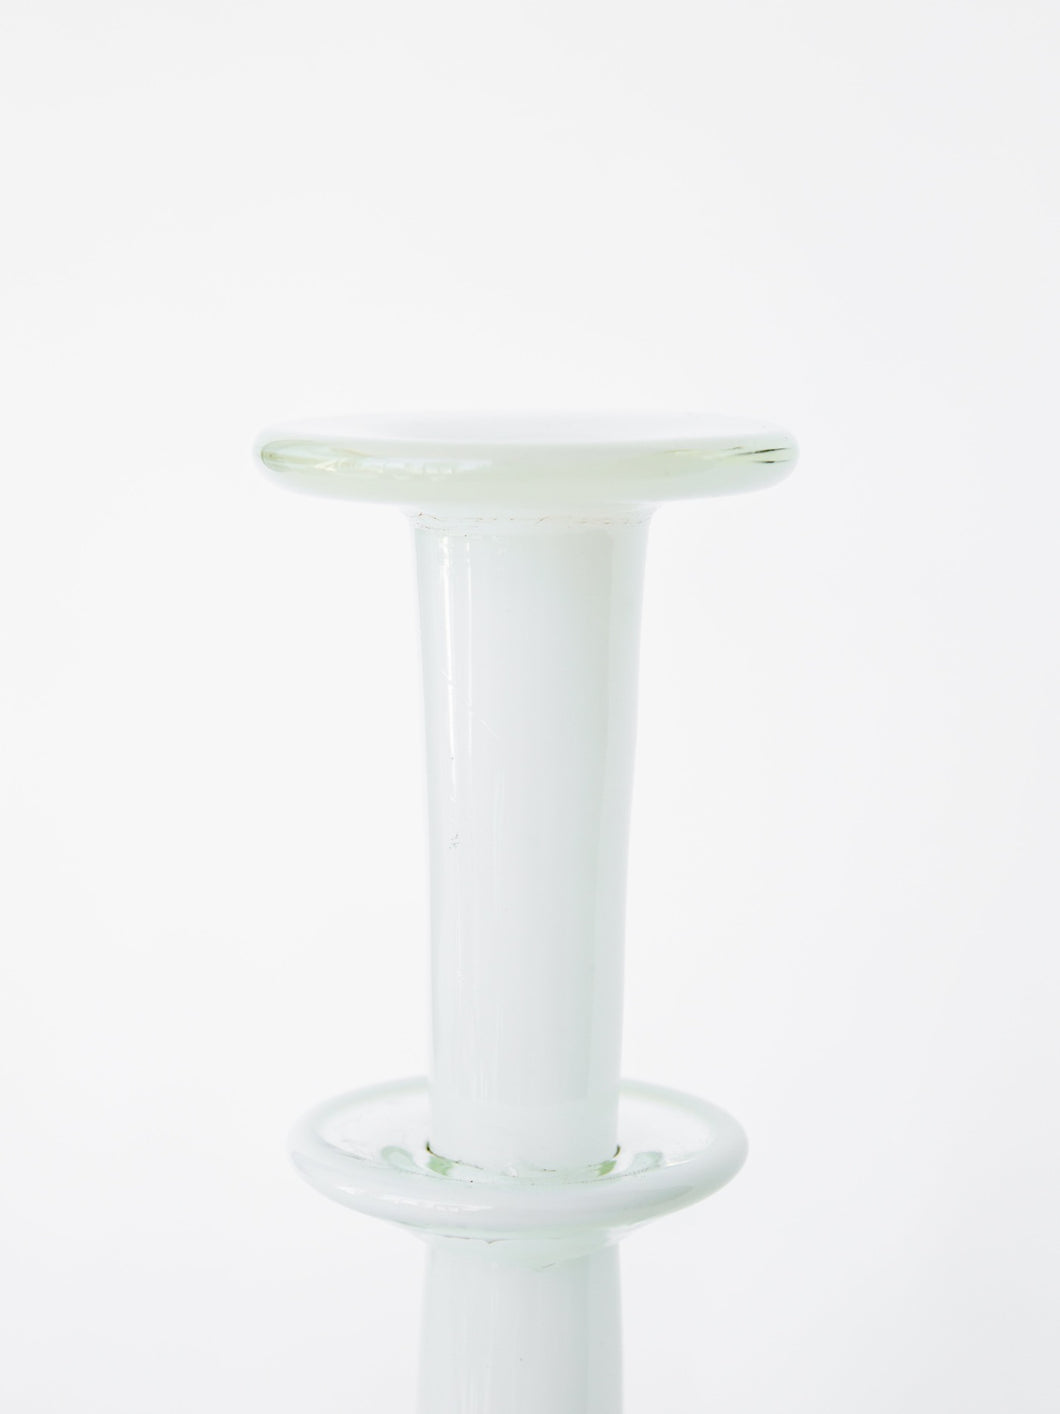 Vintage White Hand-Blown Glass Vase